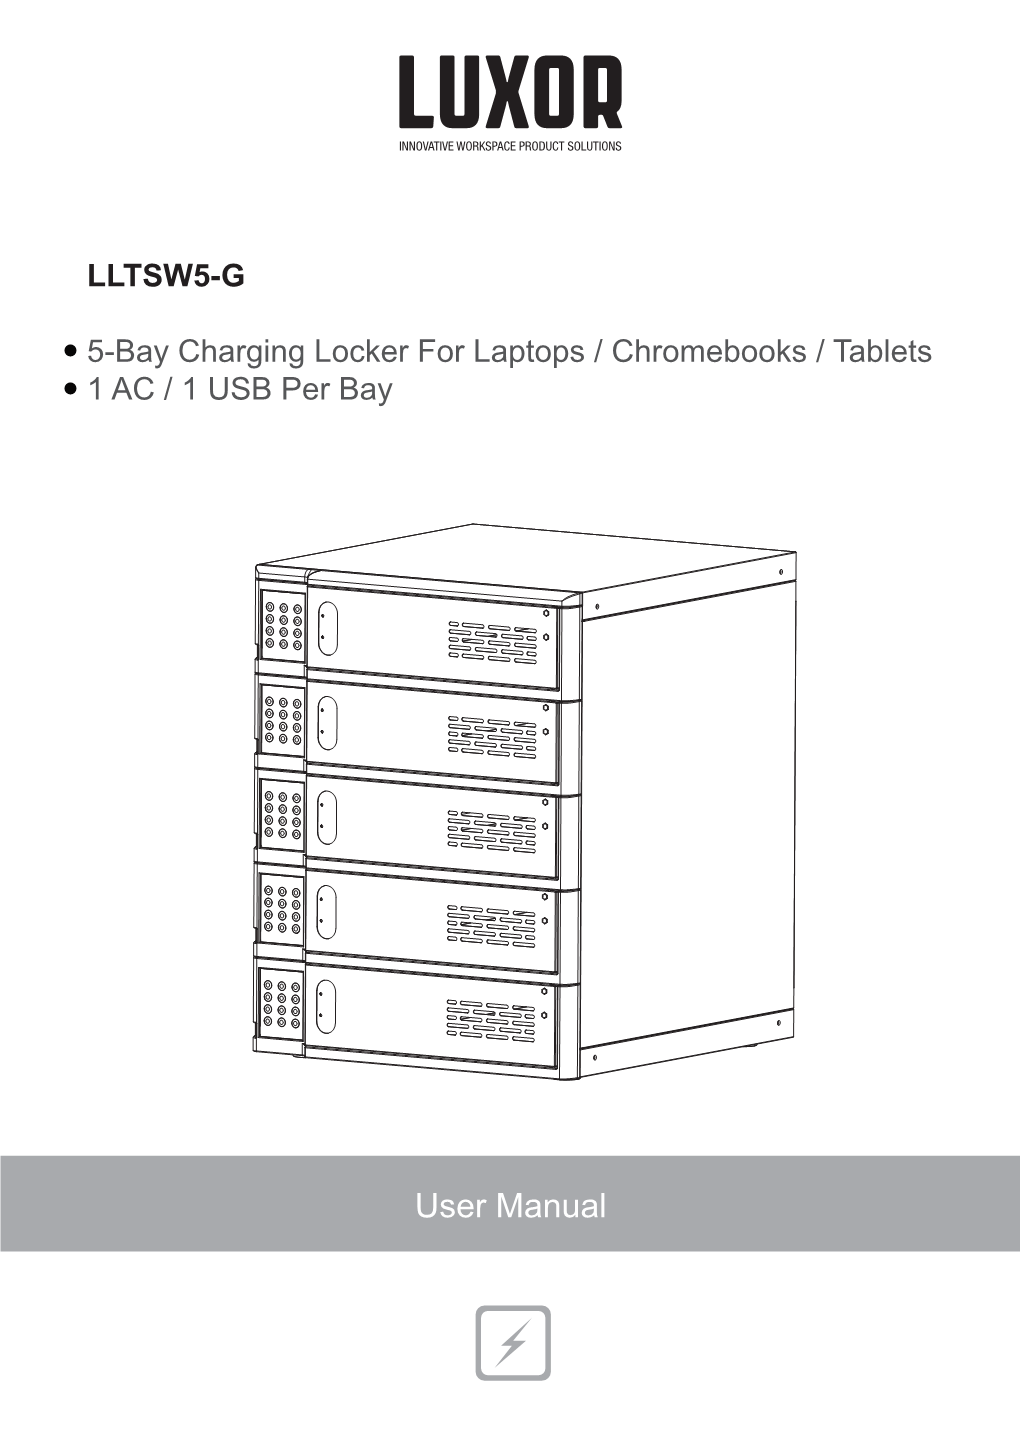 LLTSW5-G 5-Bay Charging Locker for Laptops / Chromebooks / Tablets 1 AC / 1 USB Per